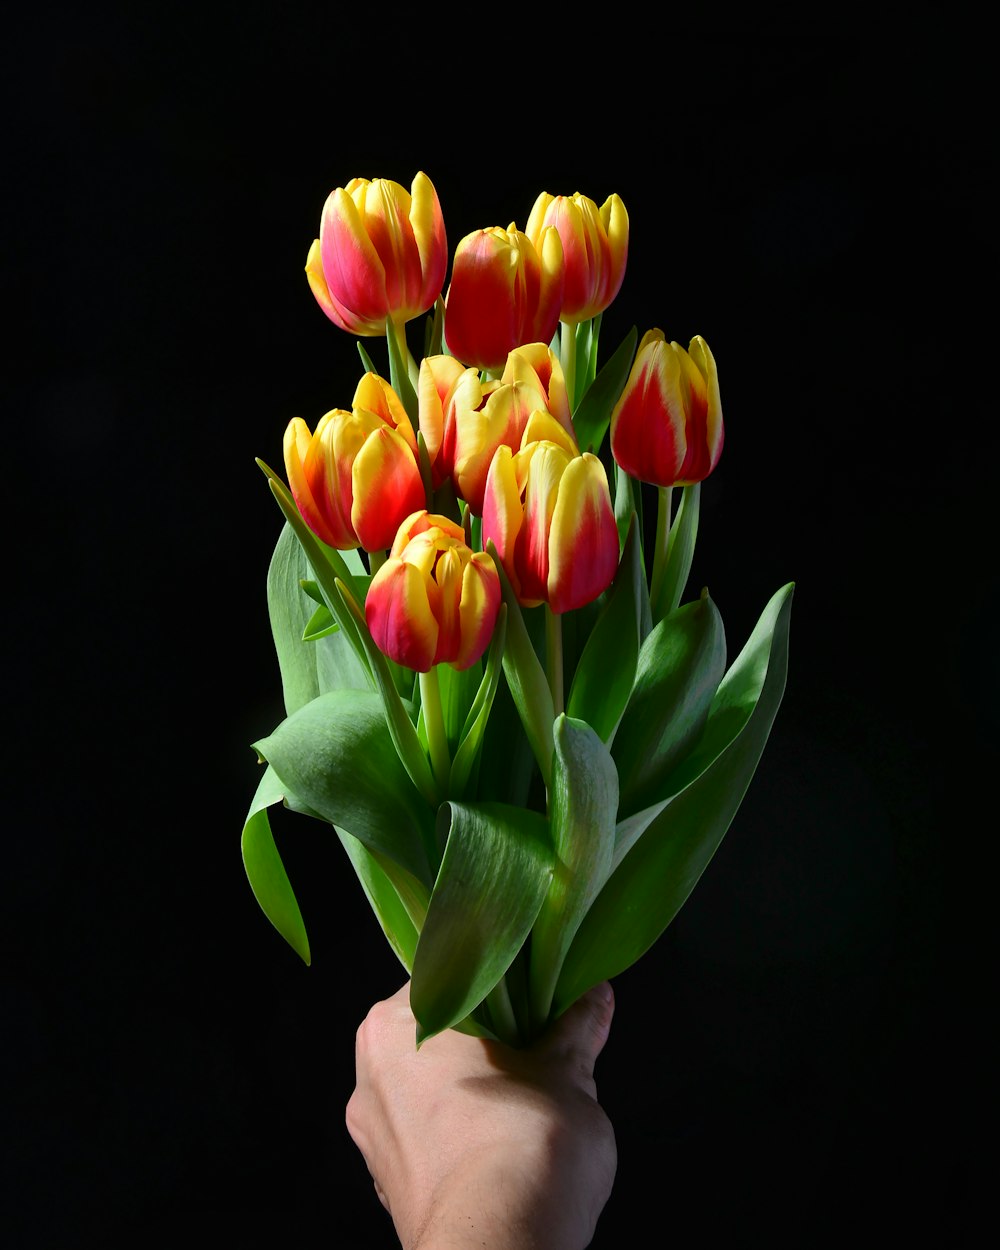 pessoa segurando flores de tulipa amarelas e vermelhas